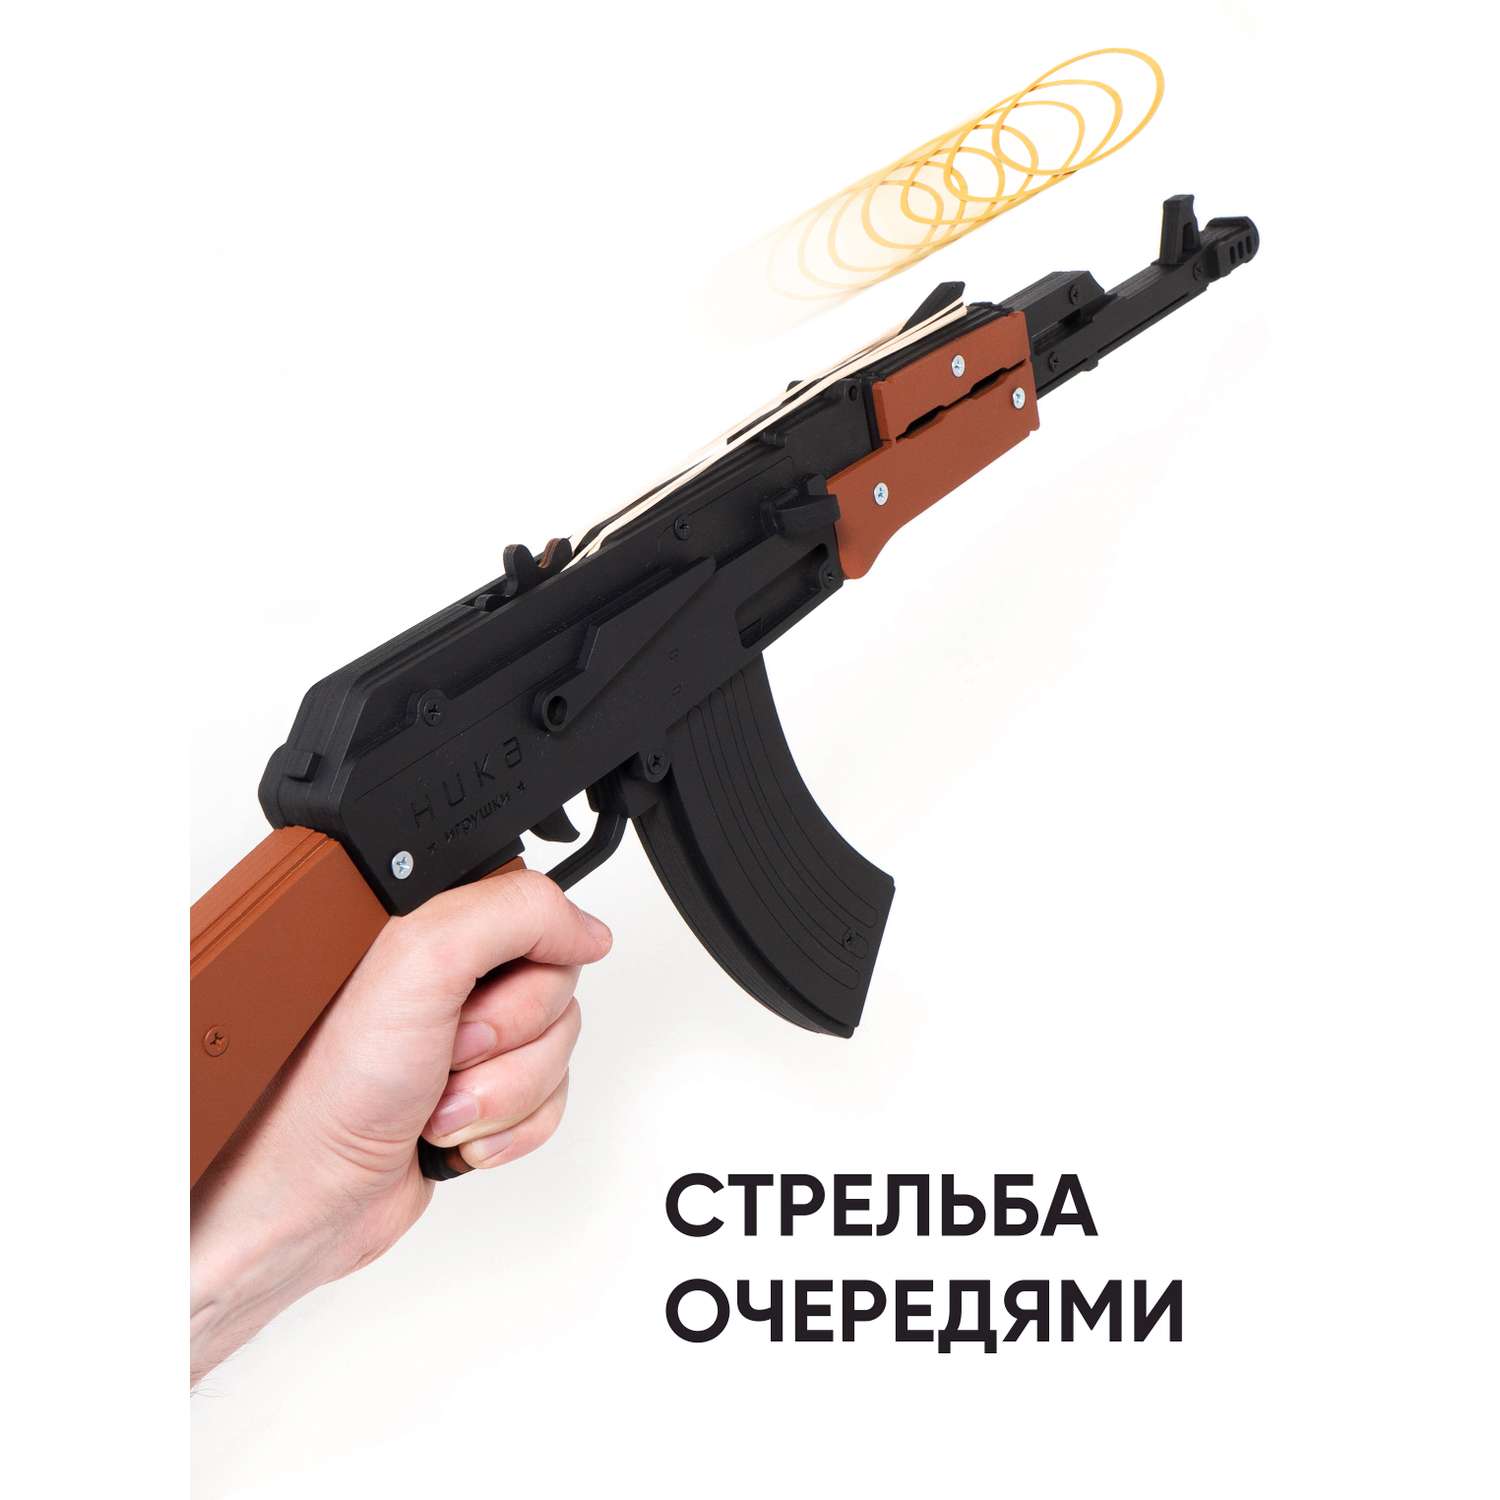 Резинкострел НИКА игрушки Автомат АК-47 в картонной упаковке - фото 2